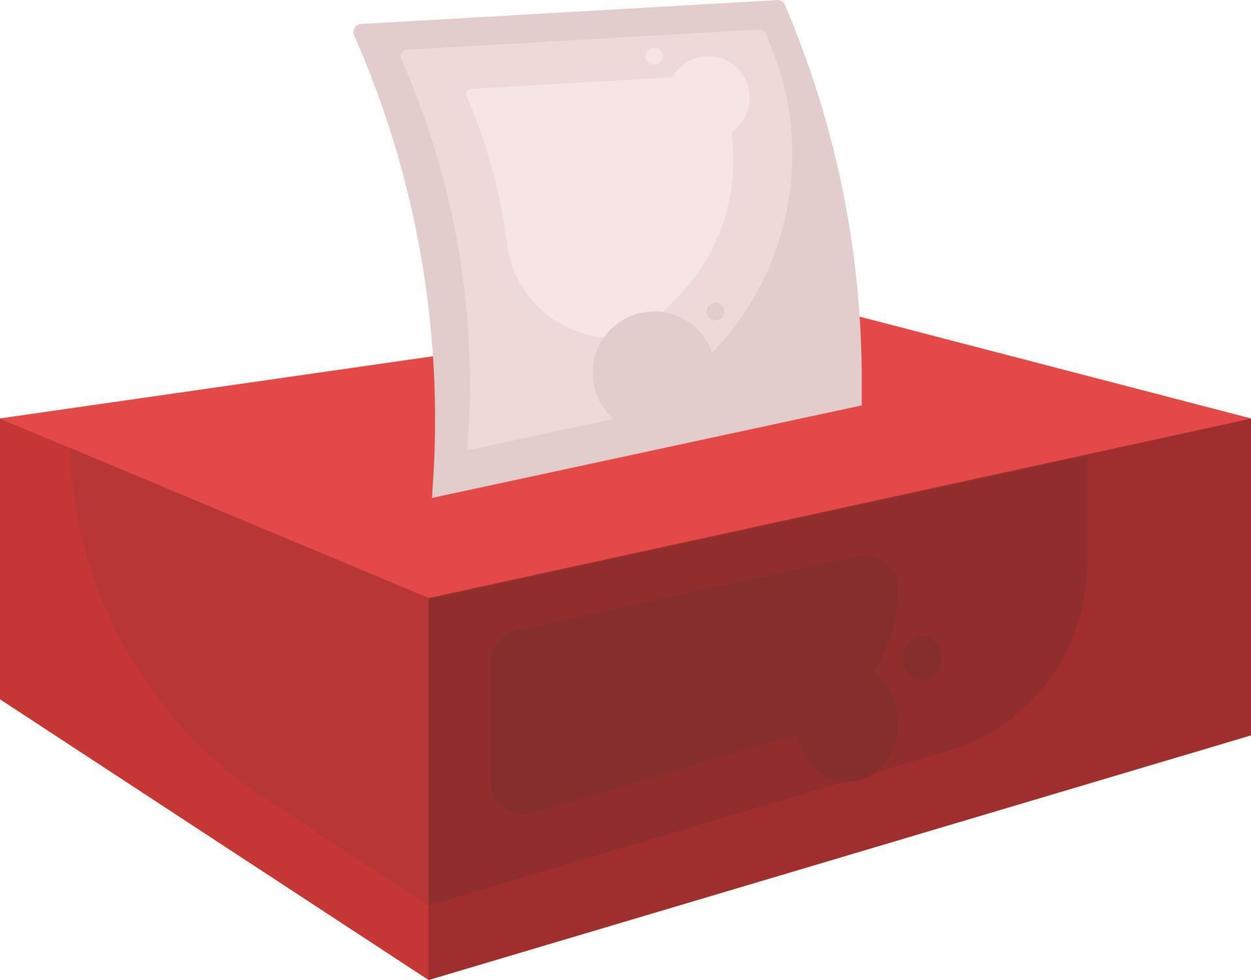 caixa de tecido vermelho, ilustração, vetor em fundo branco